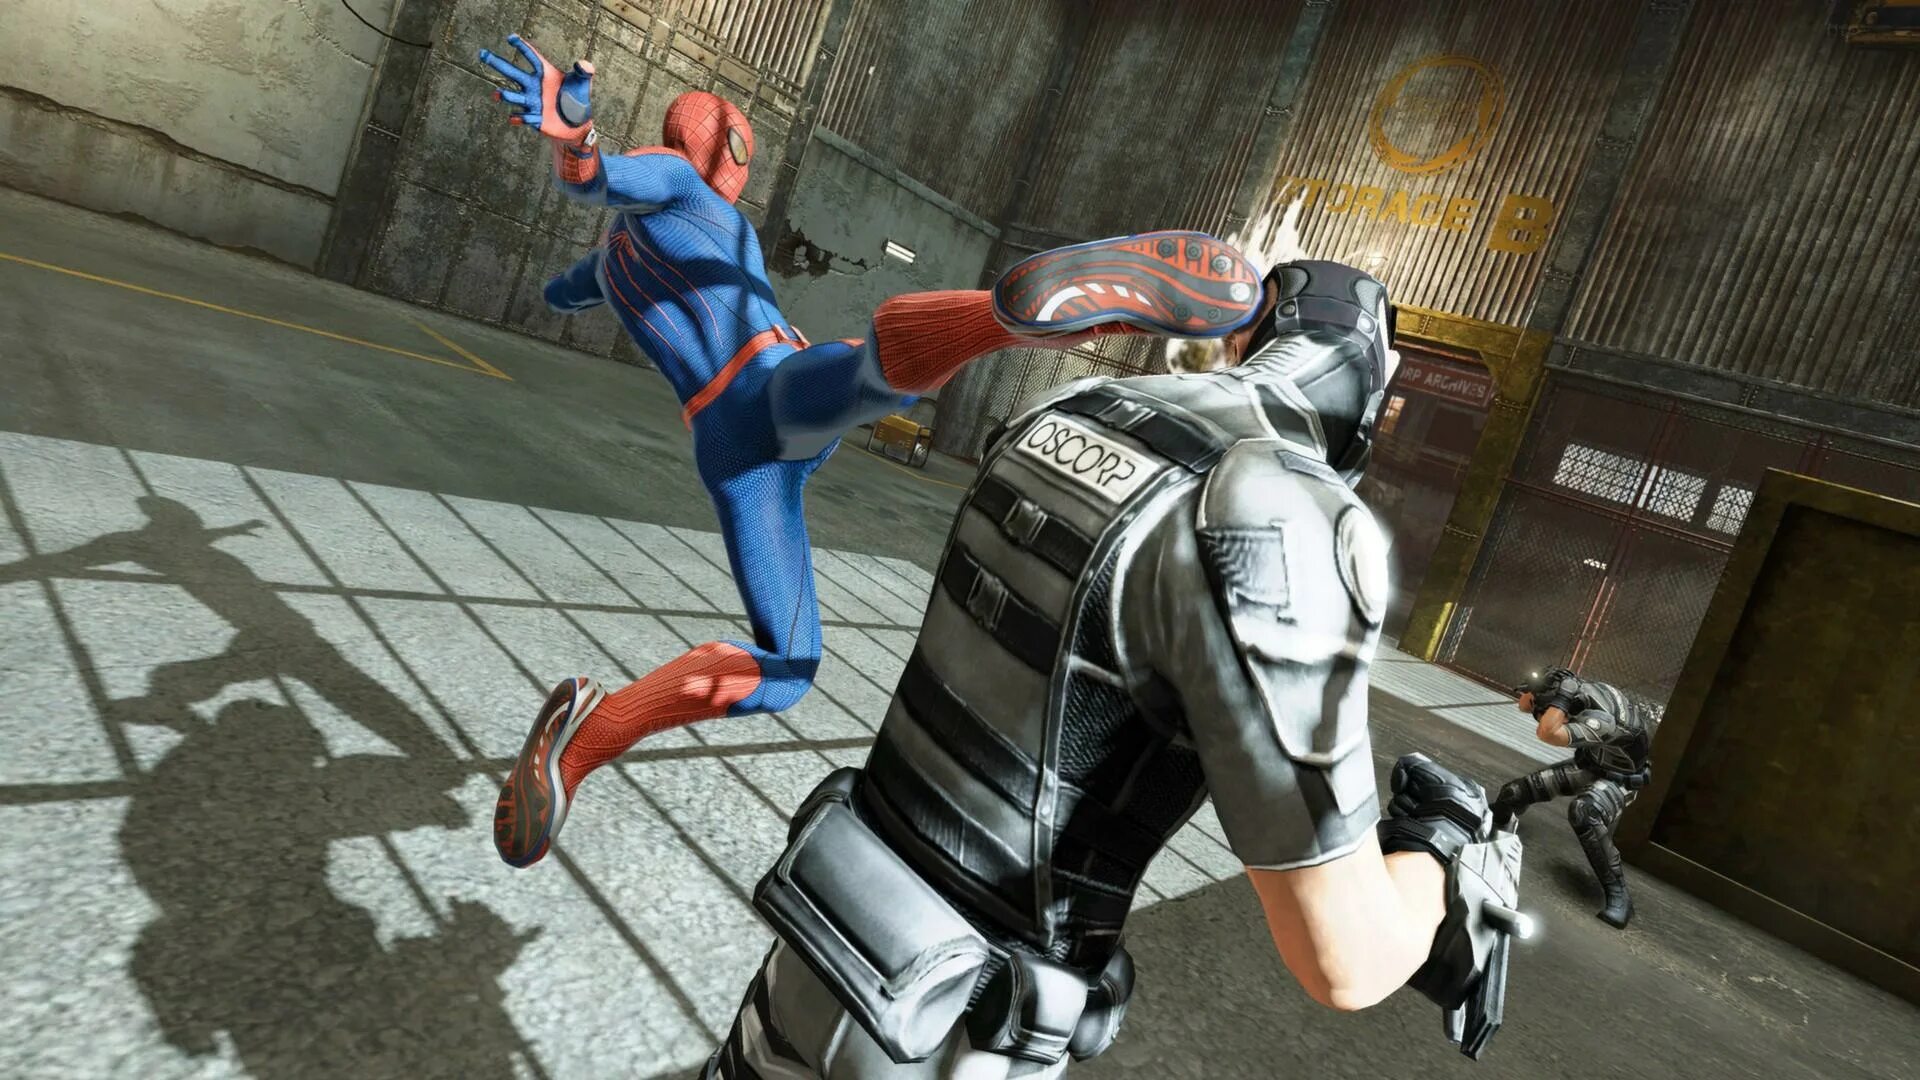 The amazing Spider-man игра. The amazing Spider-man 1 игра. Новый человек паук игра 2012. Человек паук амазинг игра.